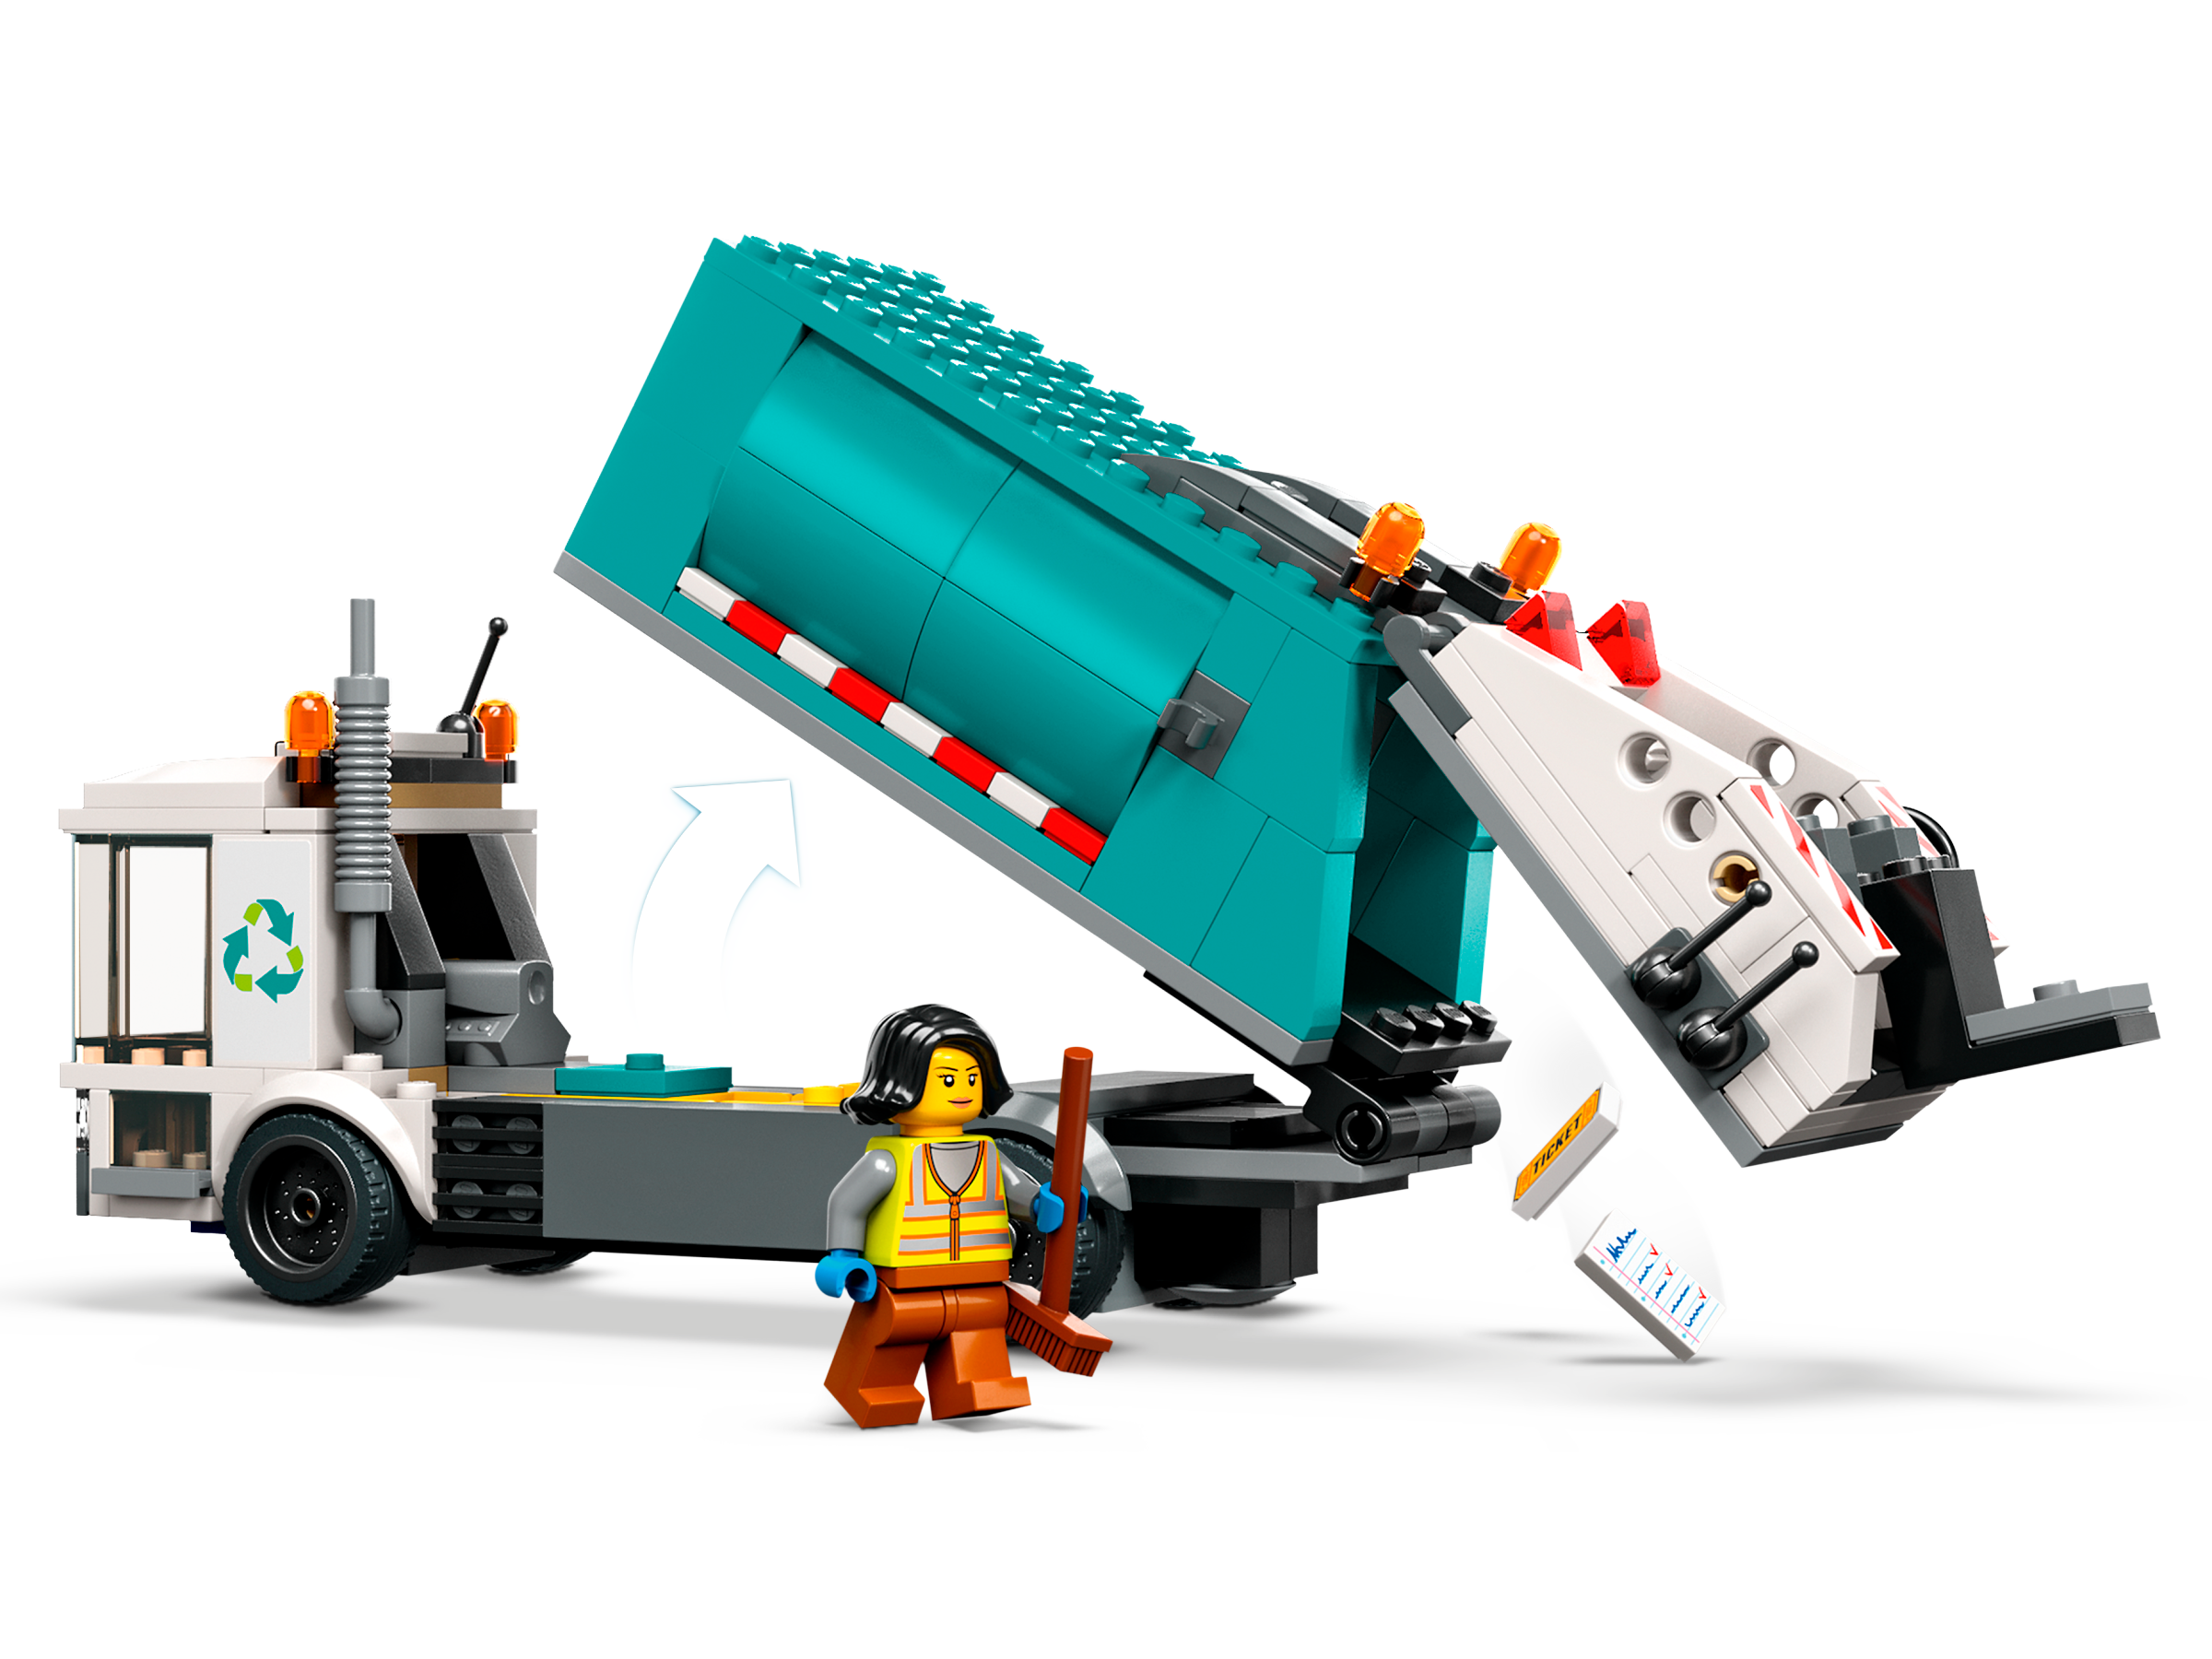 LEGO City 60386 Le Camion de Recyclage, Jouet Camion-Poubelle, Jeu